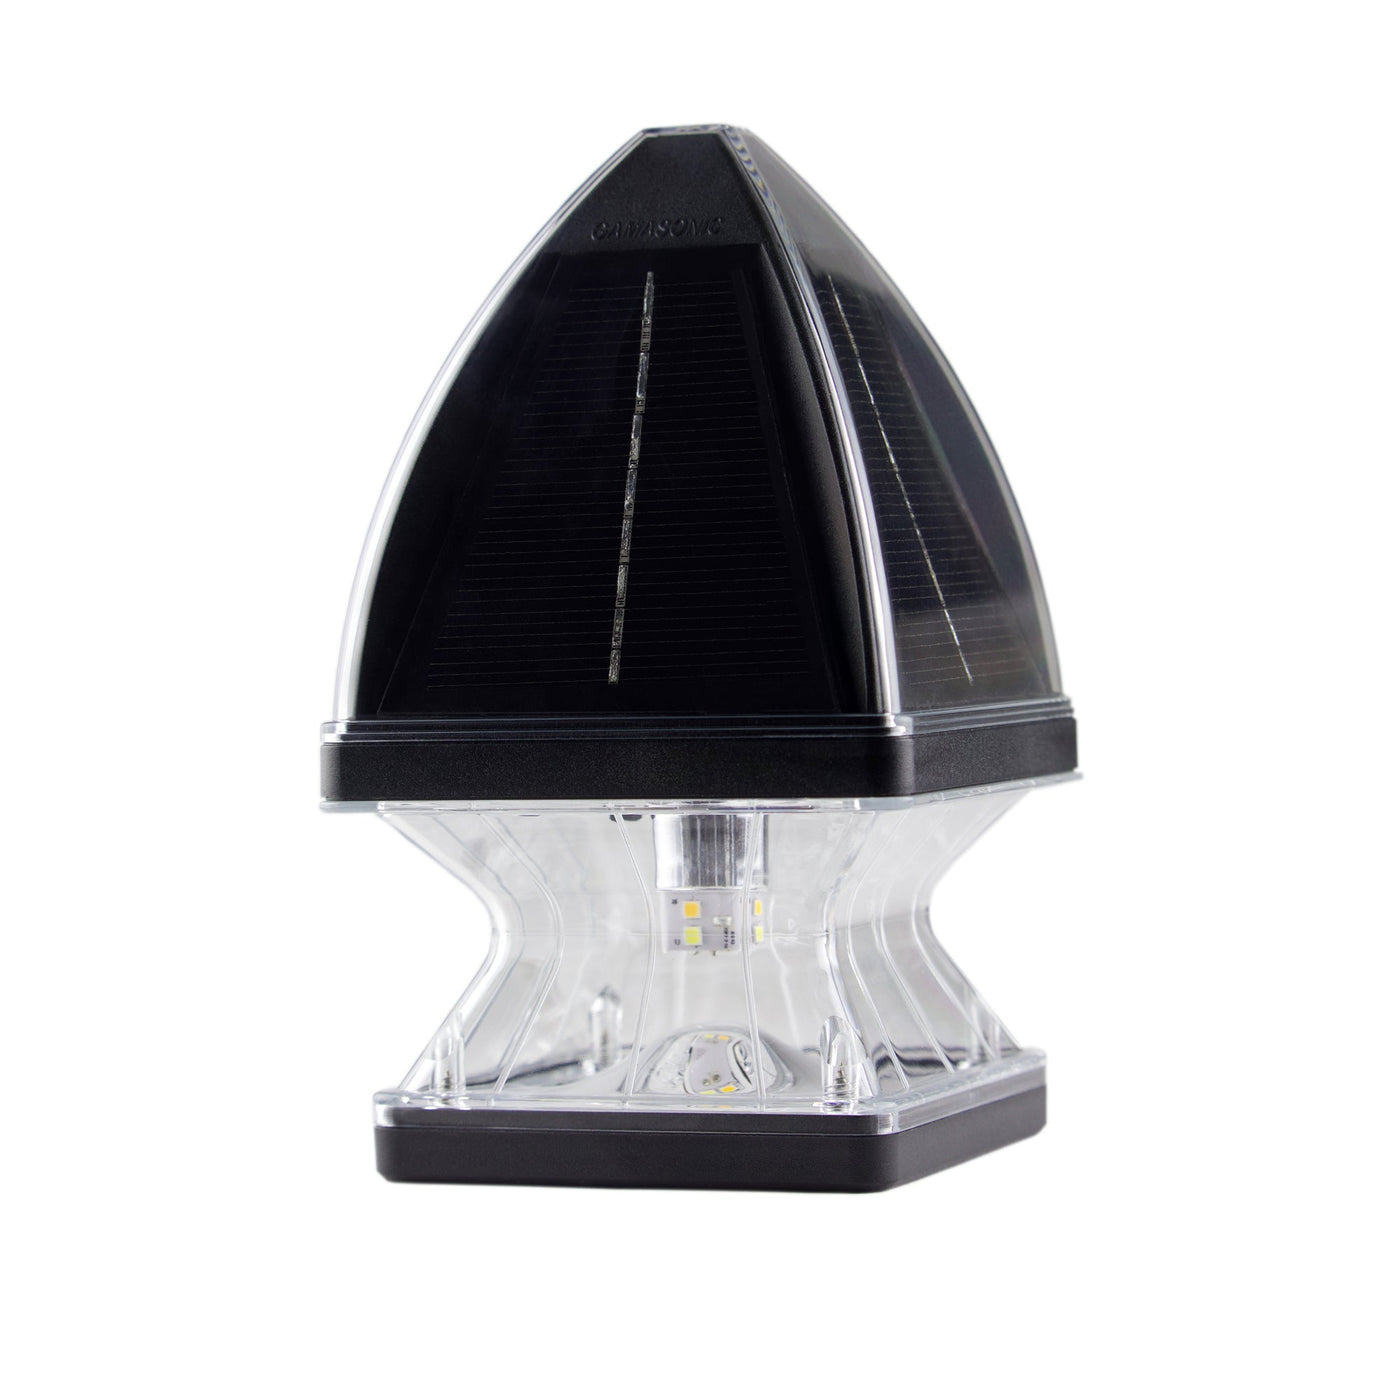 2 Pack LED Gothic Solar Post Cap Light, 40 Lumens, 2.65W, 3.2V, CCT Selectable 3100K/6000K, Black or White Finish